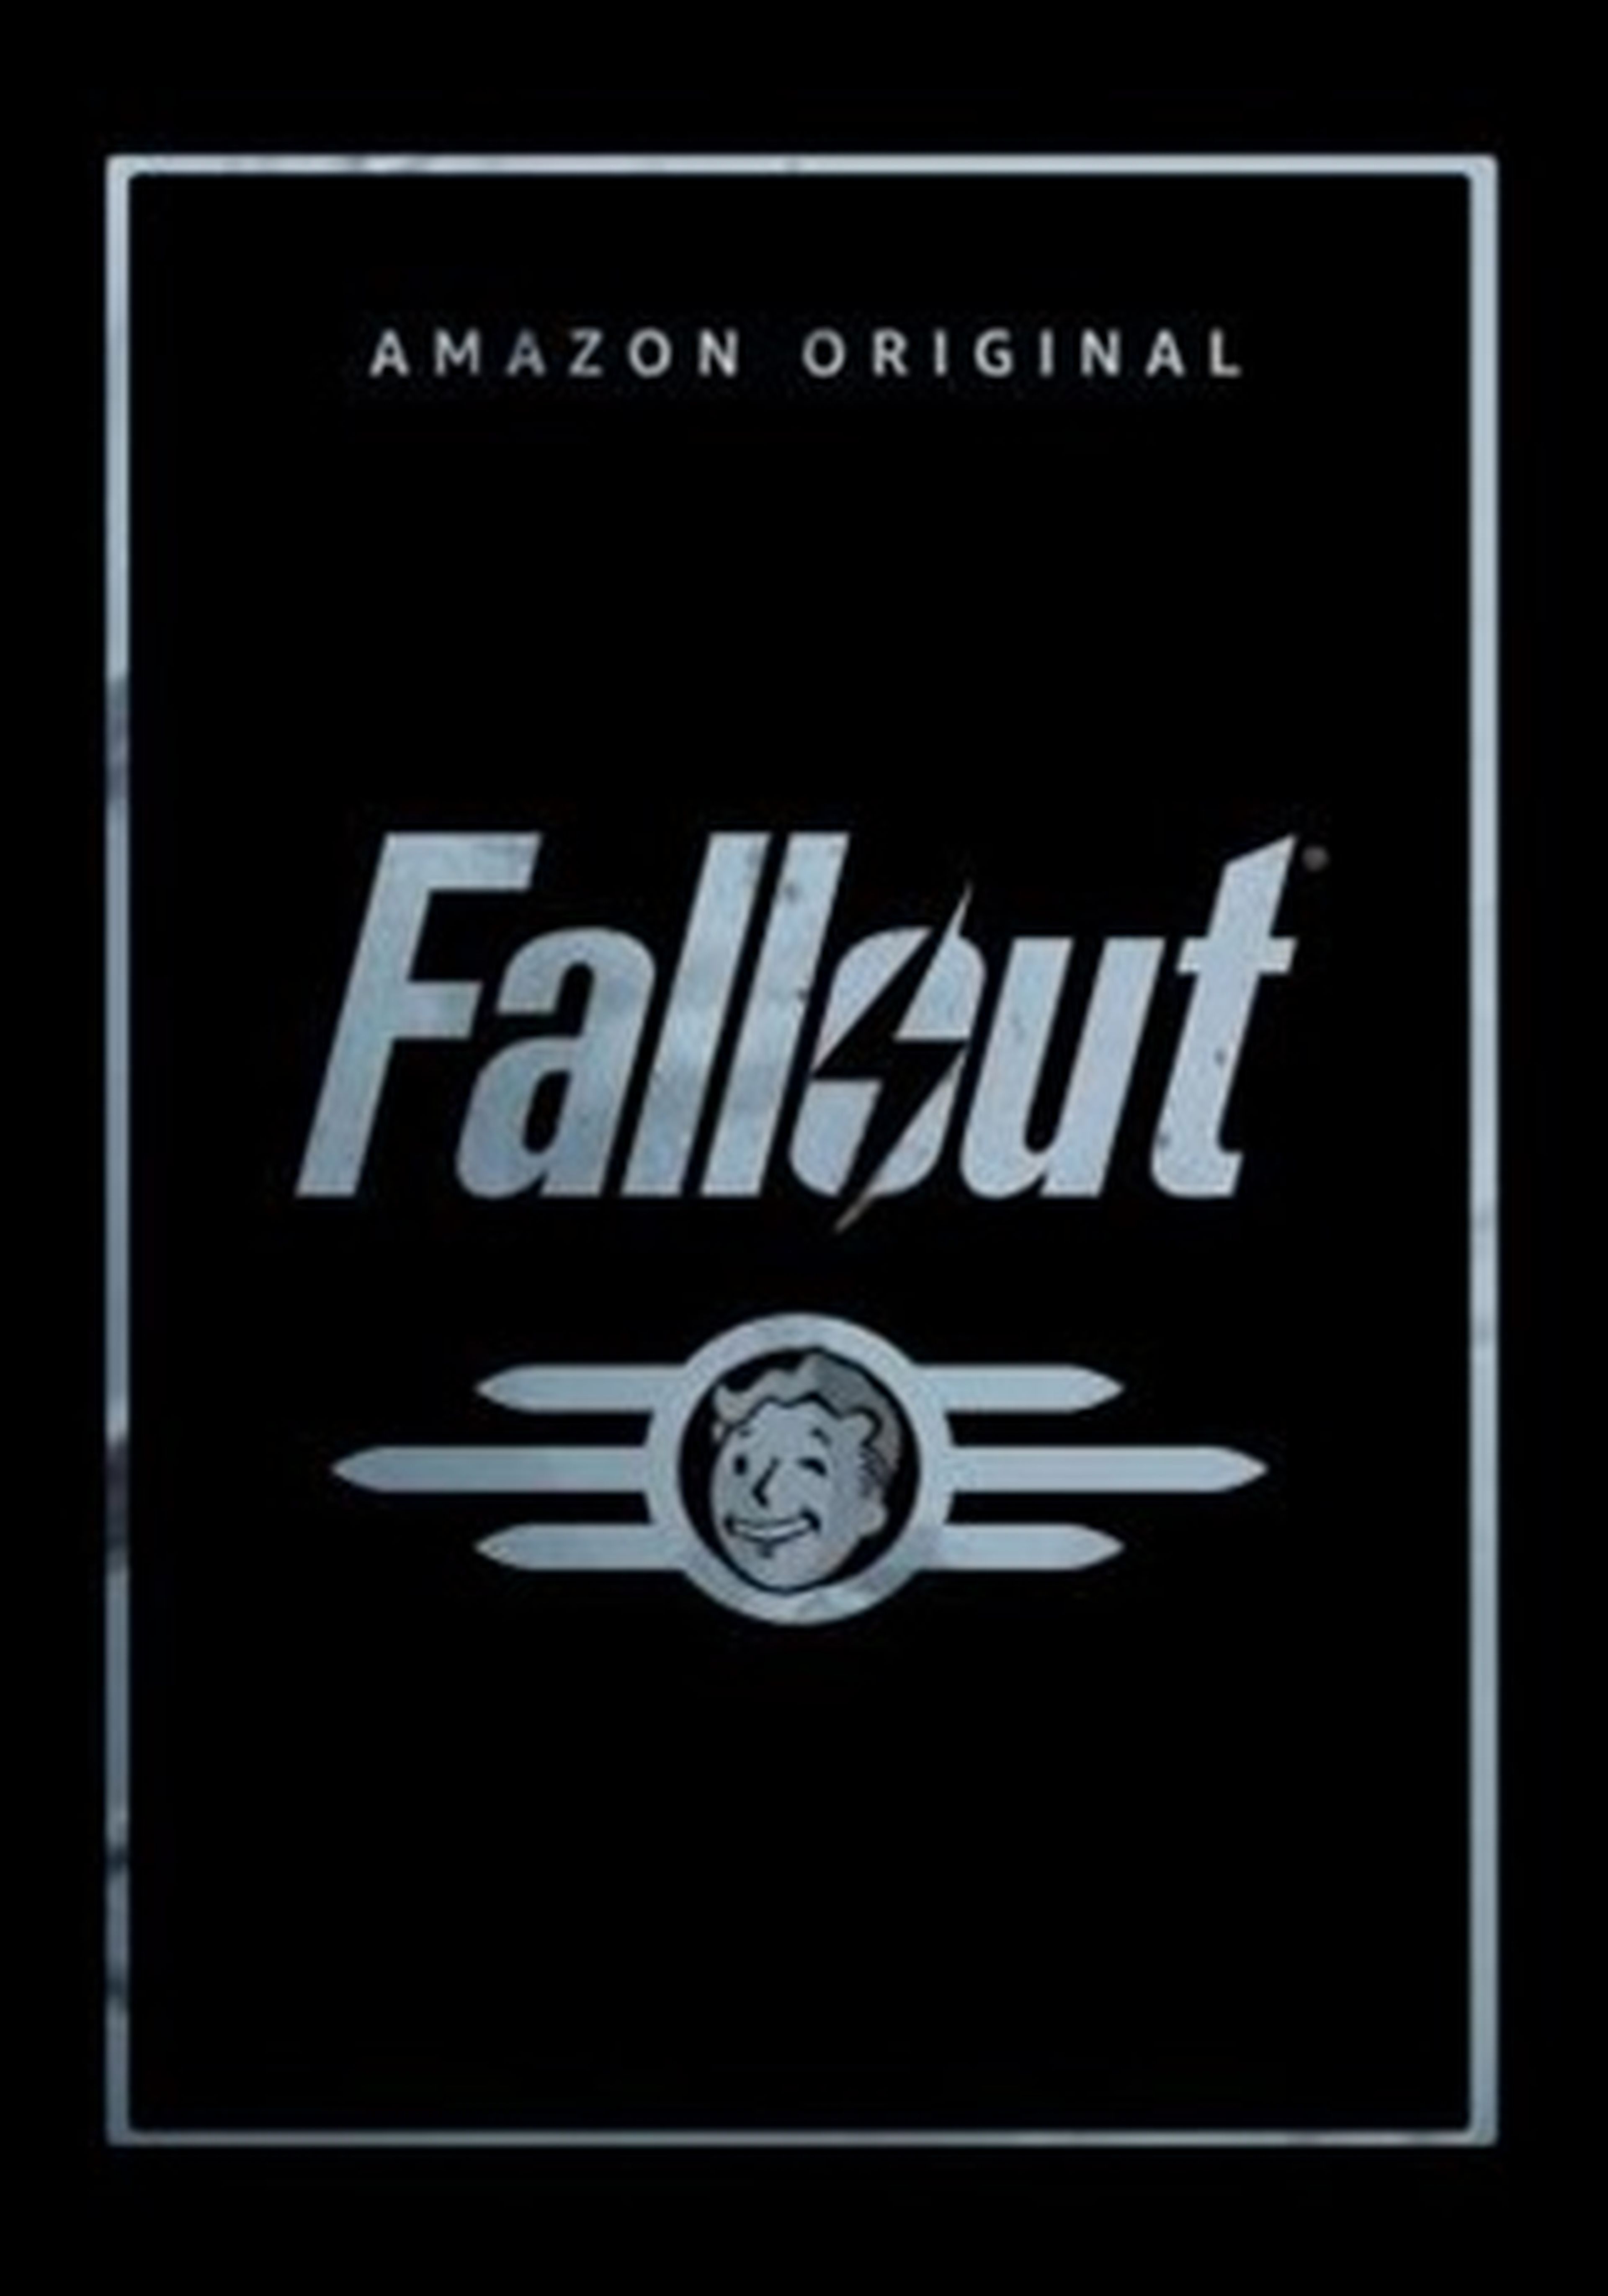 Primer tráiler de Fallout, la serie que adapta los juegos de Bethesda